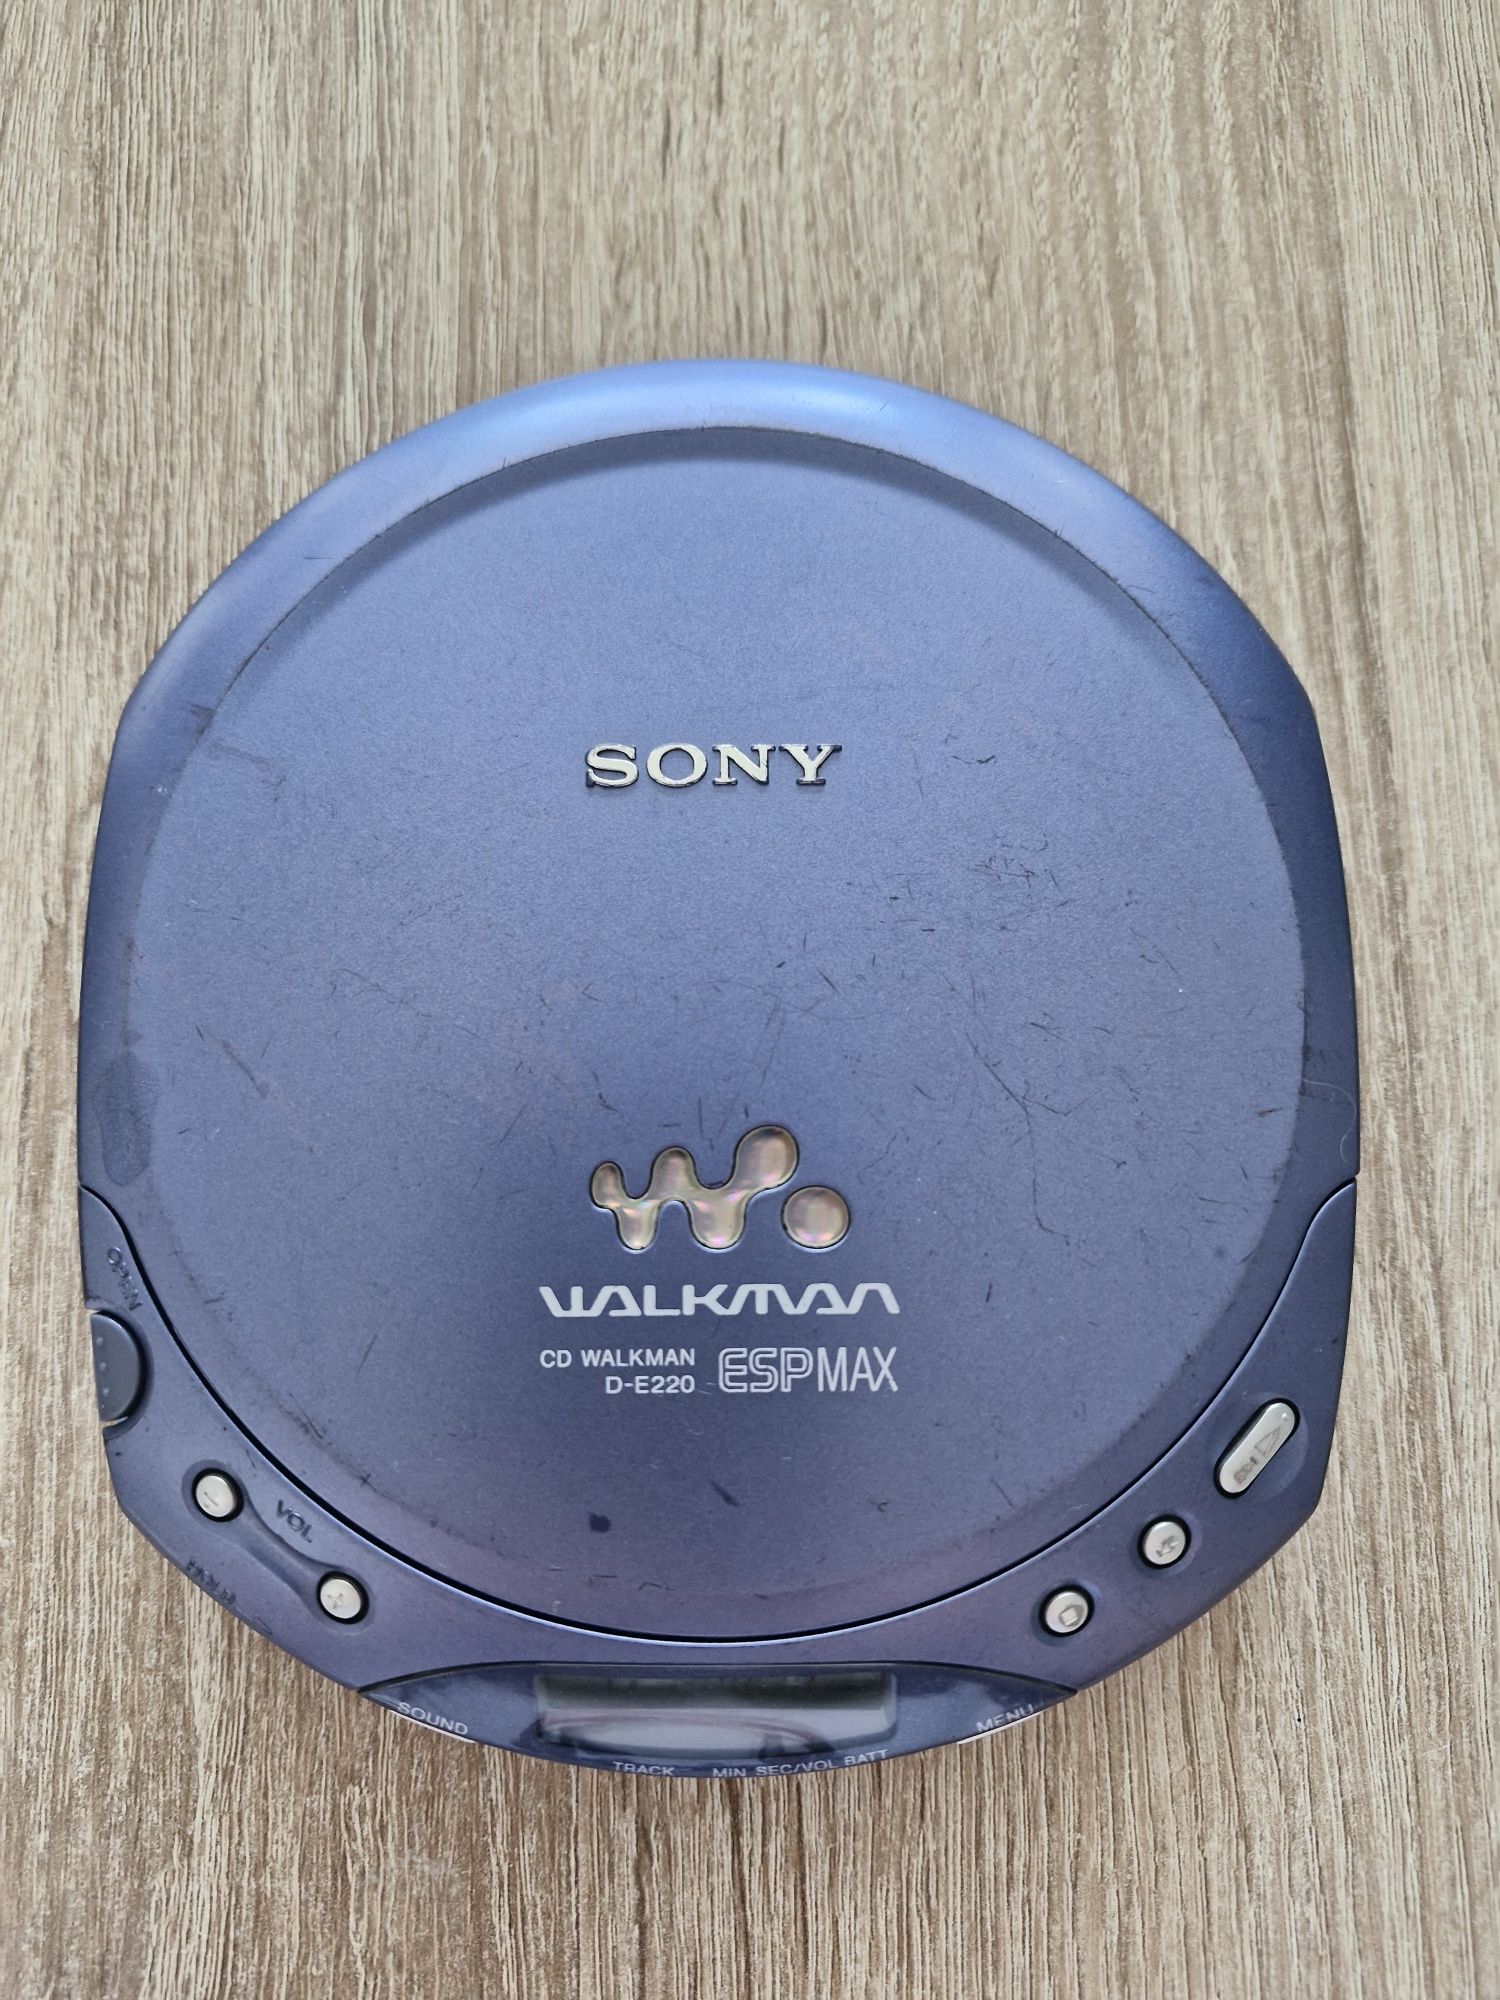 Sony CD Walkman D-E220